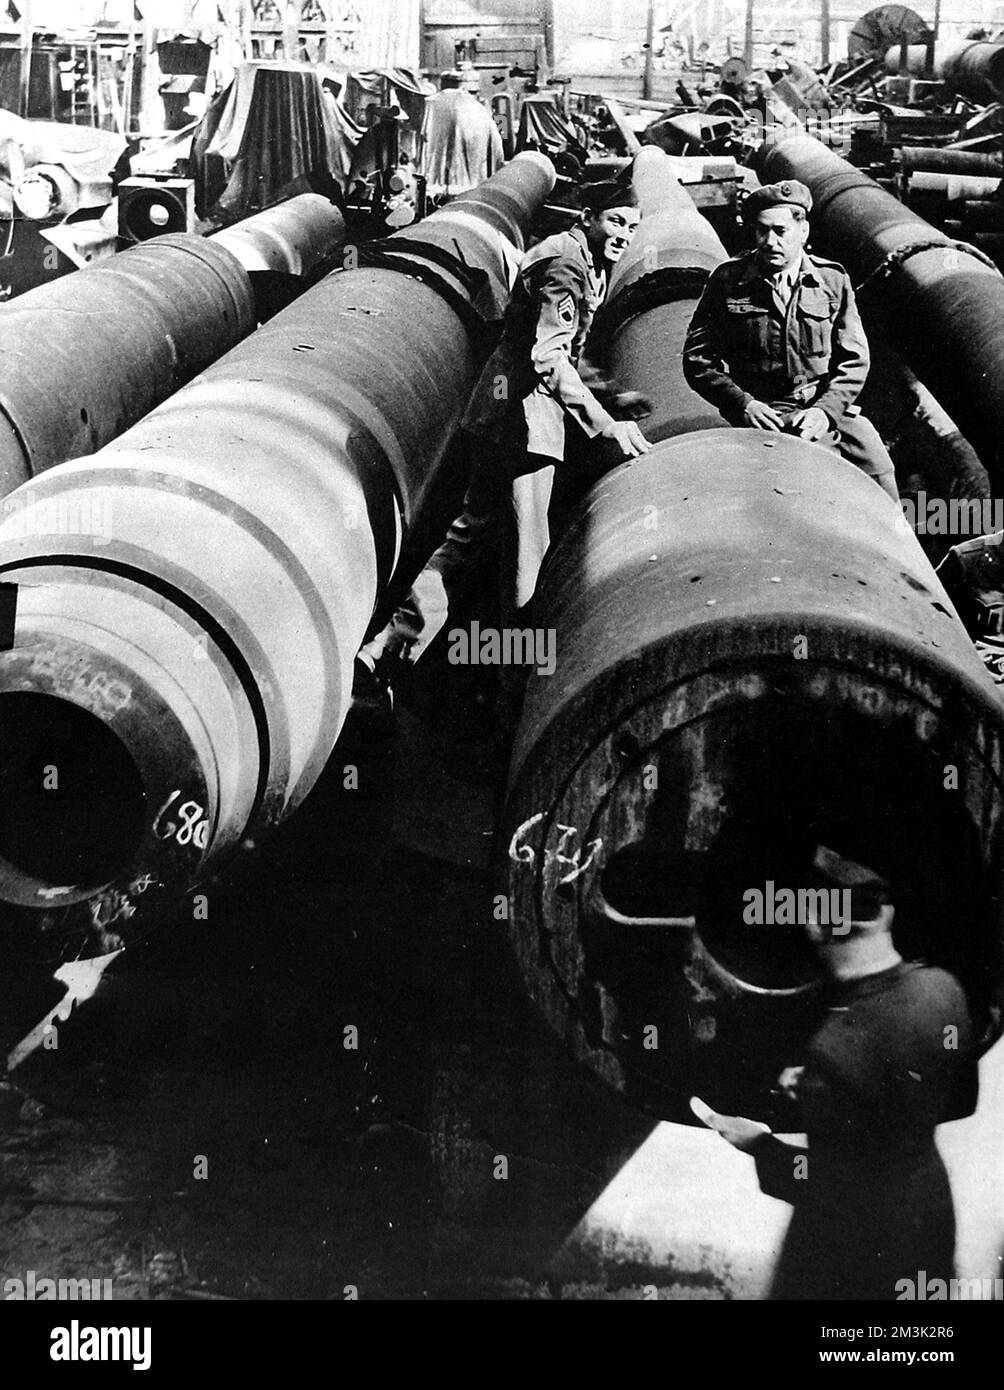 1945: An 80cm artillery shell for a German Schwerer Gustav super